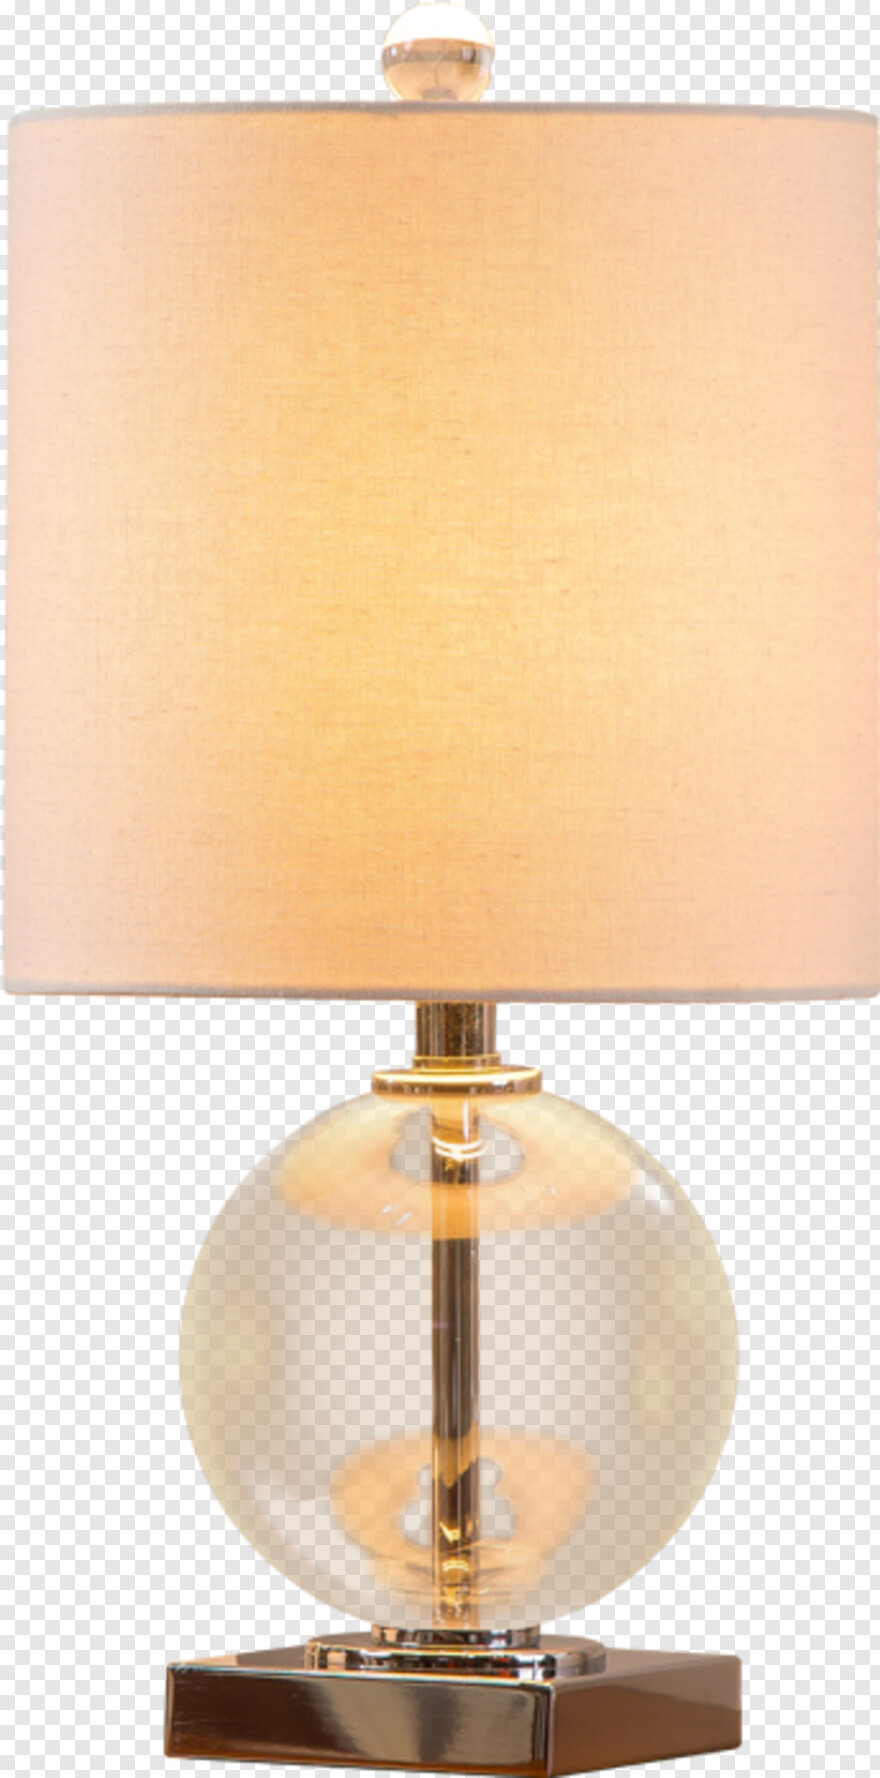 hanging-lamp # 416958